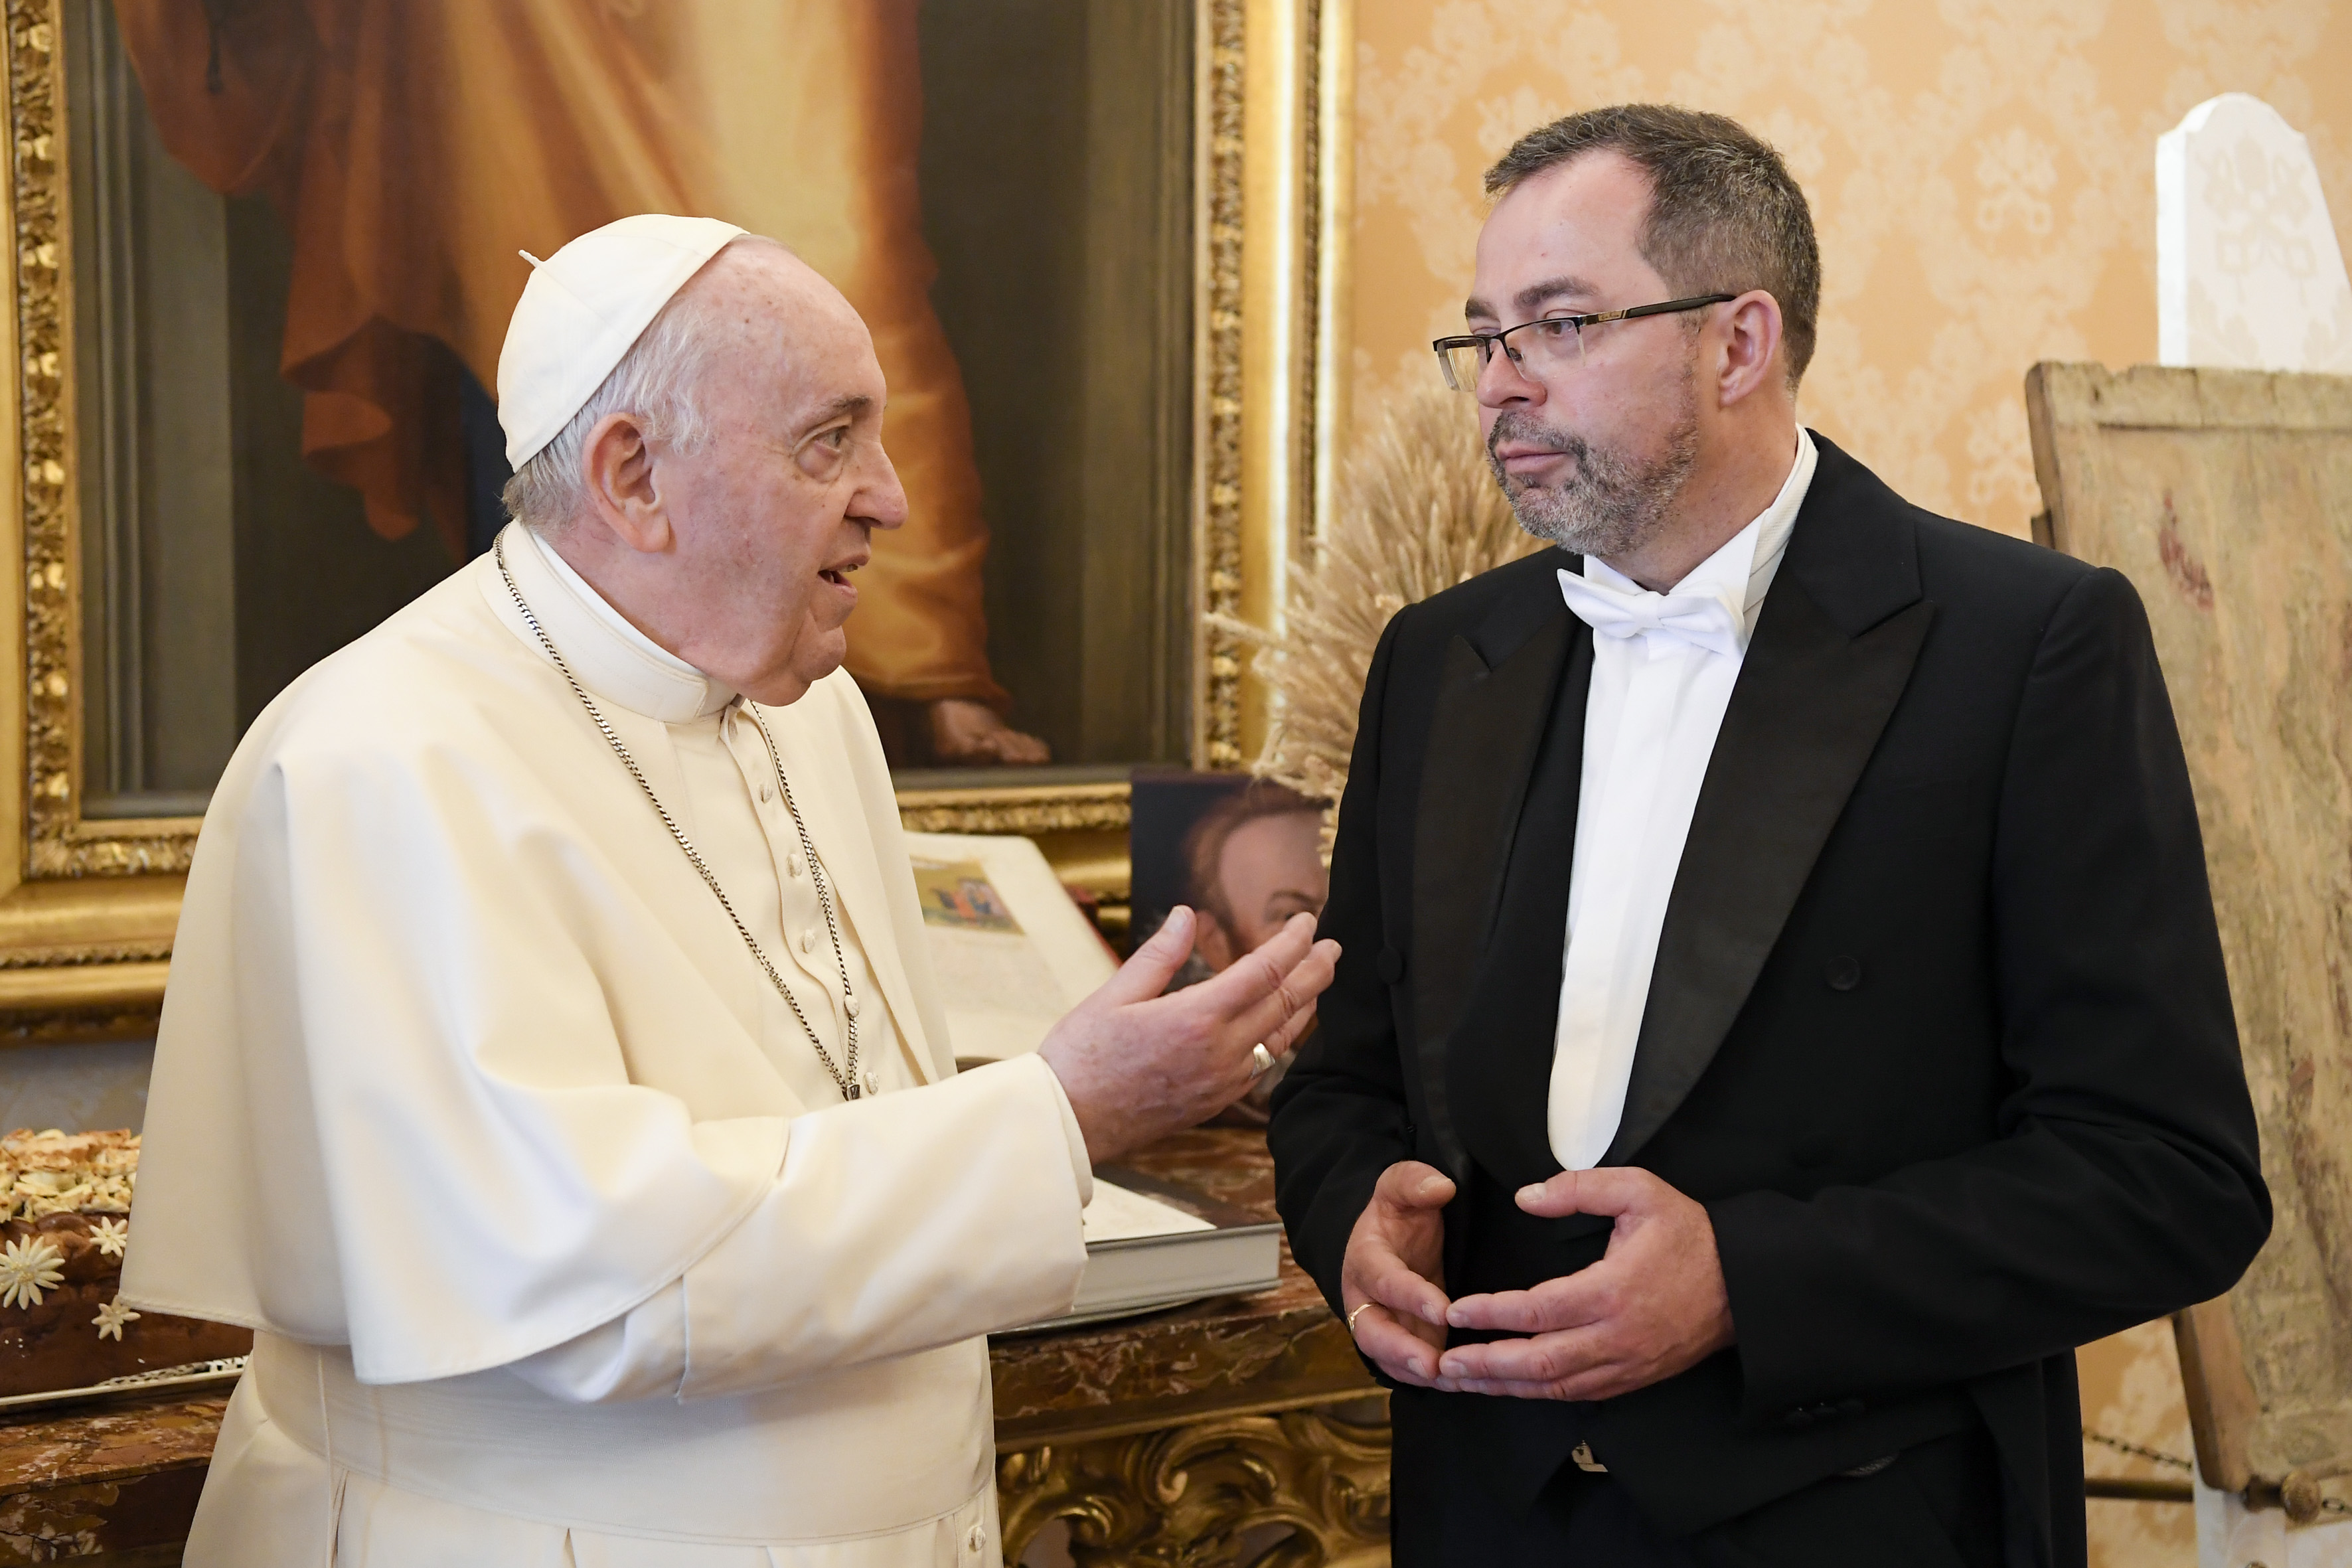 “Visita del Papa a Ucrania sigue en negociación”, dice embajador de Ucrania ante Vaticano. Bucha en la agenda